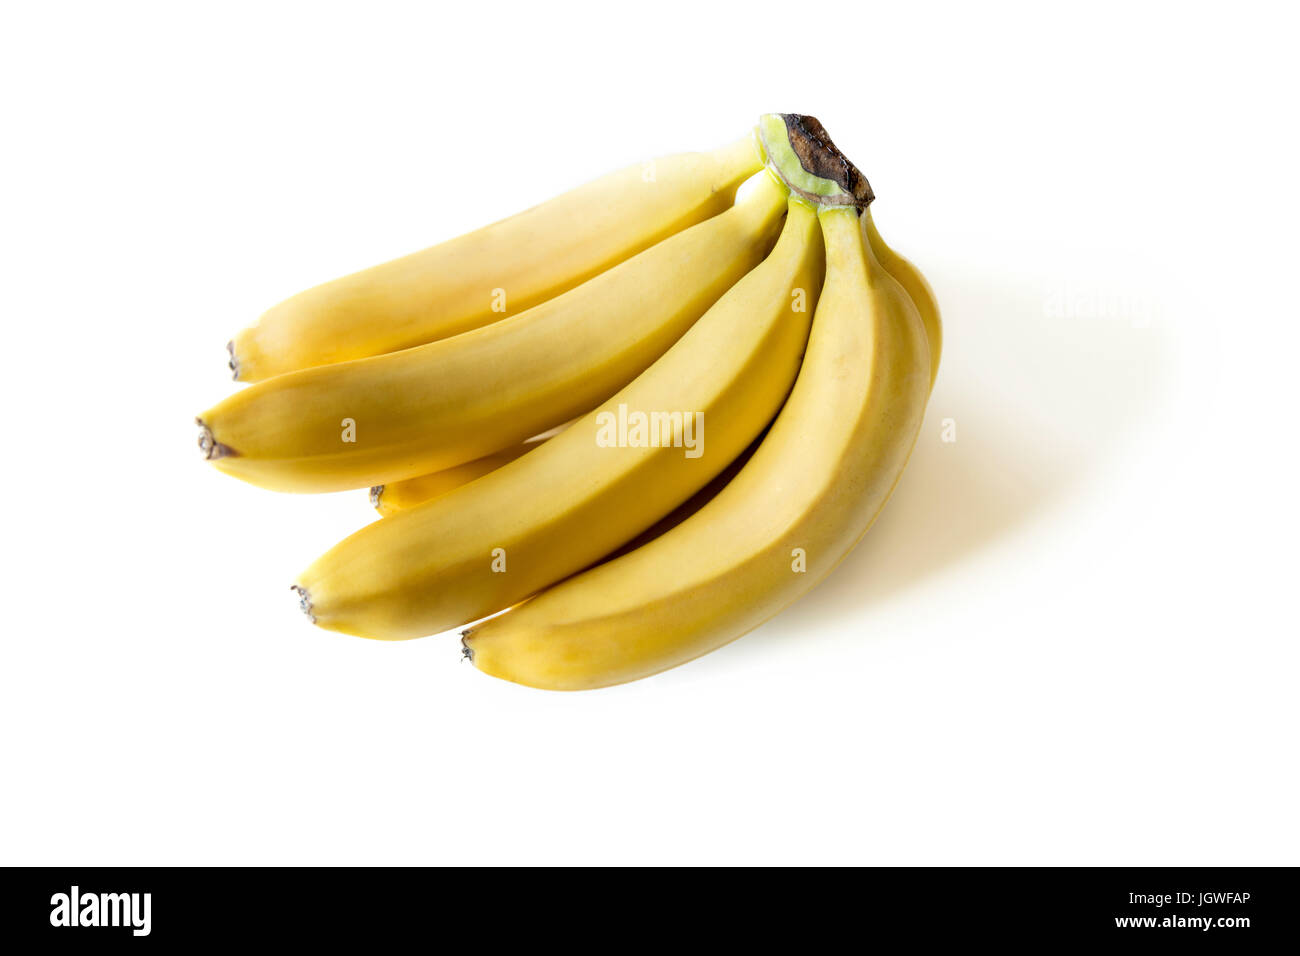 Vue rapprochée de tas de bananes mûres fraîches isolated on white Banque D'Images